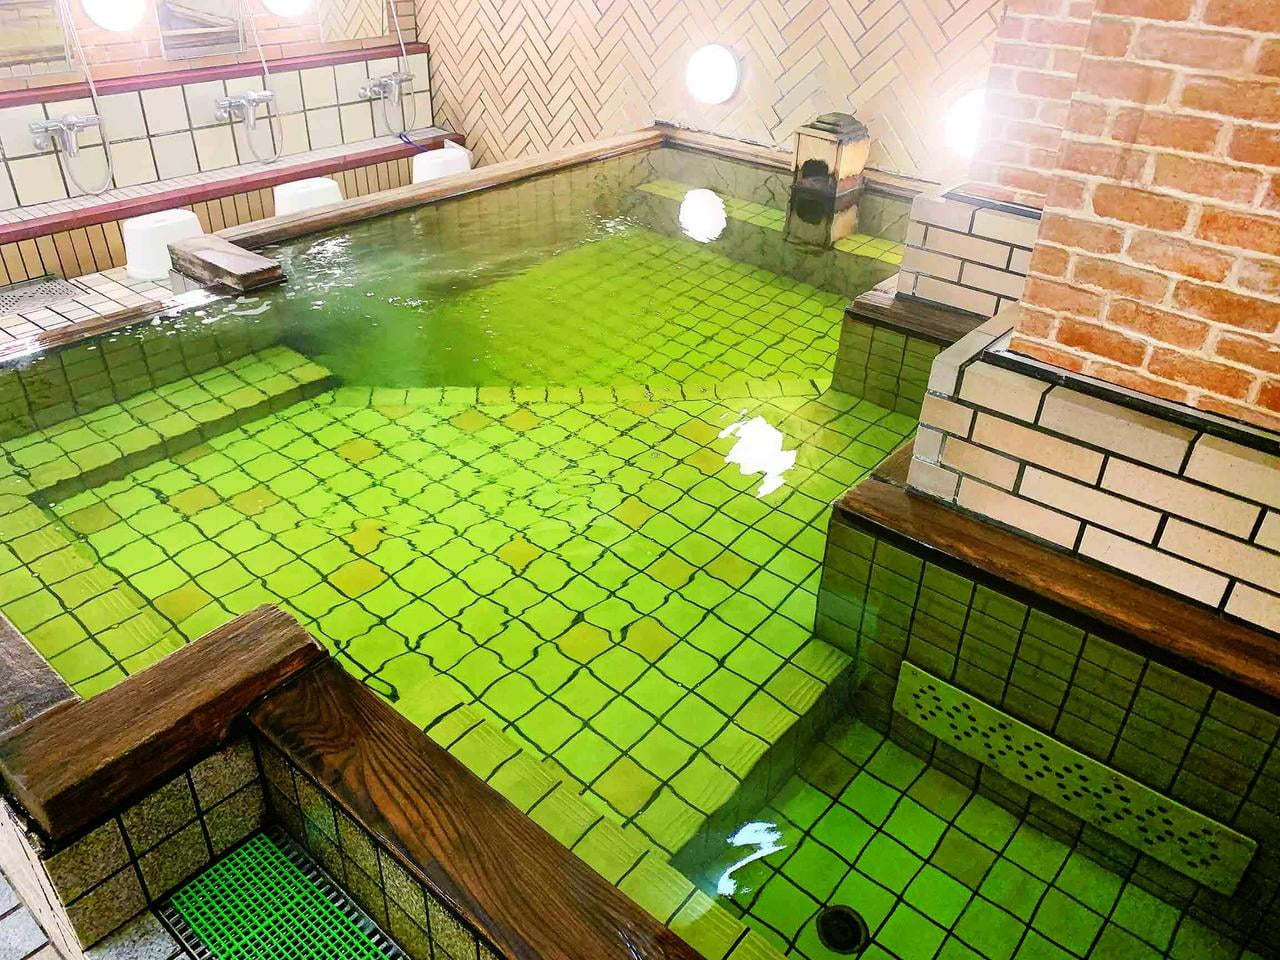 六甲おとめ塚温泉にある炭酸泉の風呂の写真.jpg